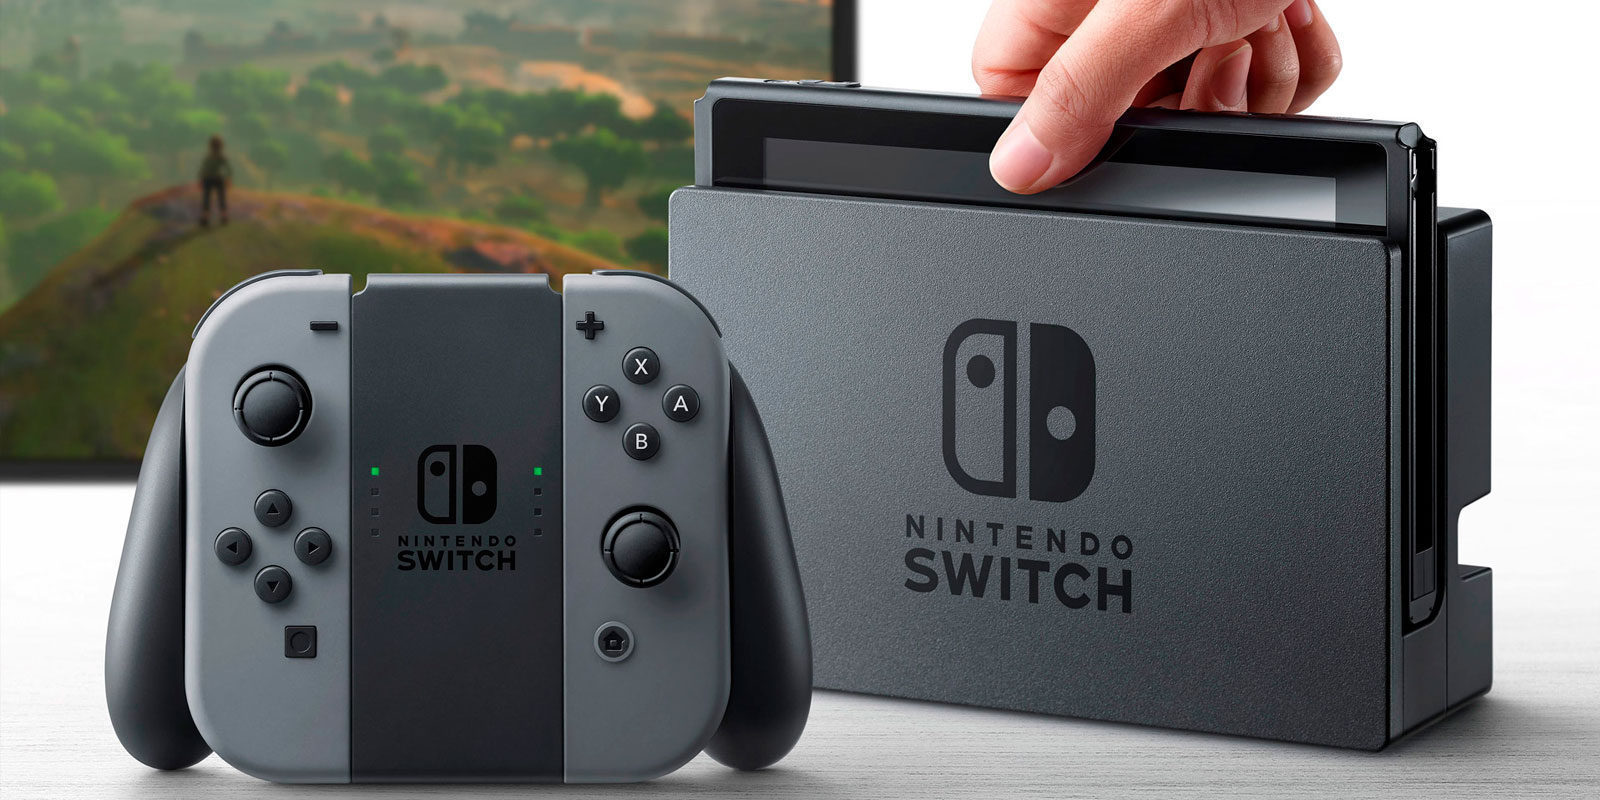 Nintendo Switch y 'Madden NFL 18' lideran las ventas en EE.UU. durante agosto